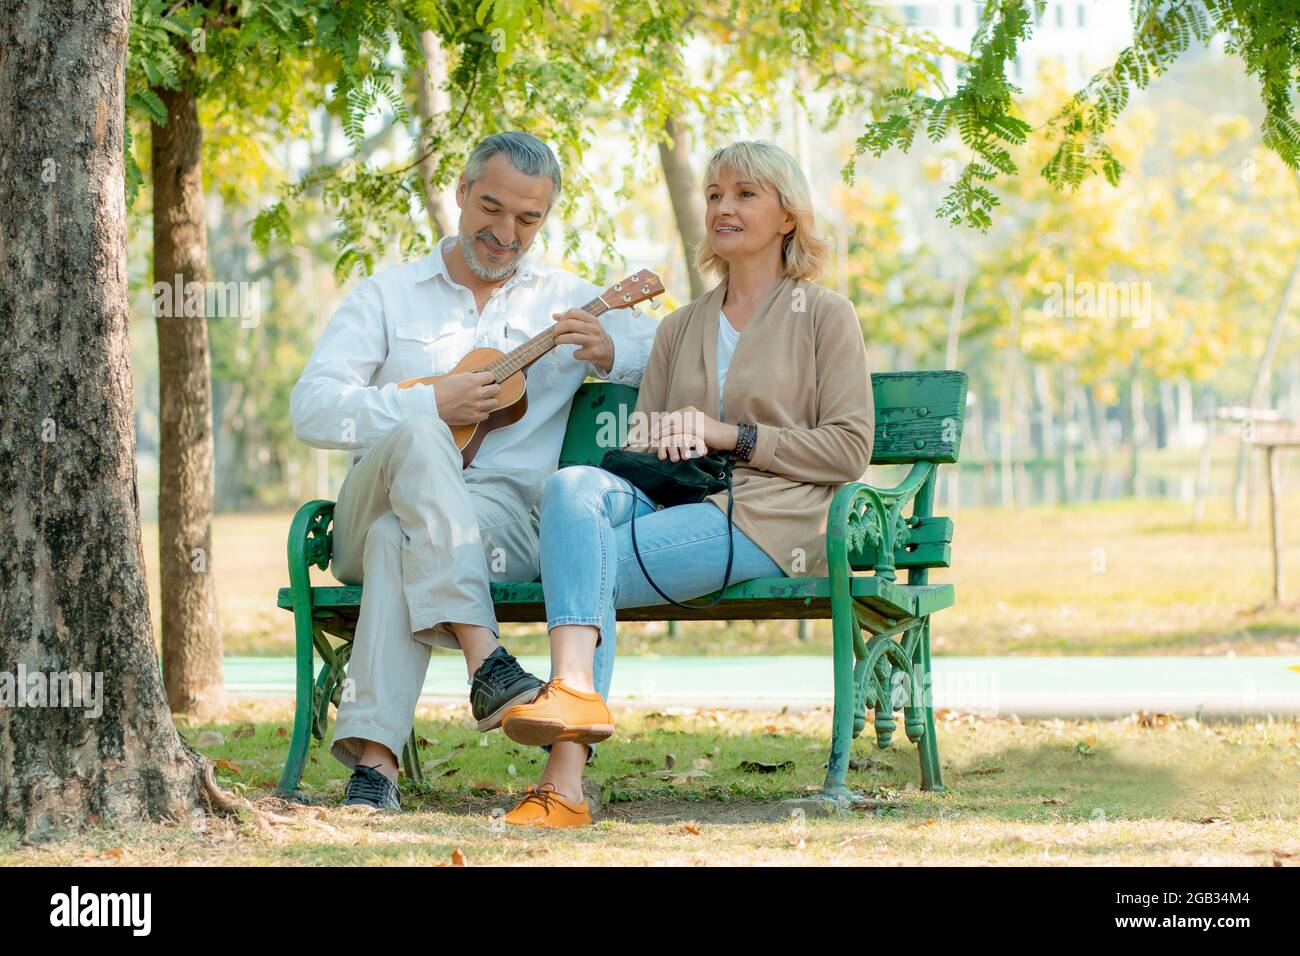 Happy Elder Liebe Paar in Romantik sitzen und spielen Ukulele Musikinstrument auf Stuhl im Park Stockfoto